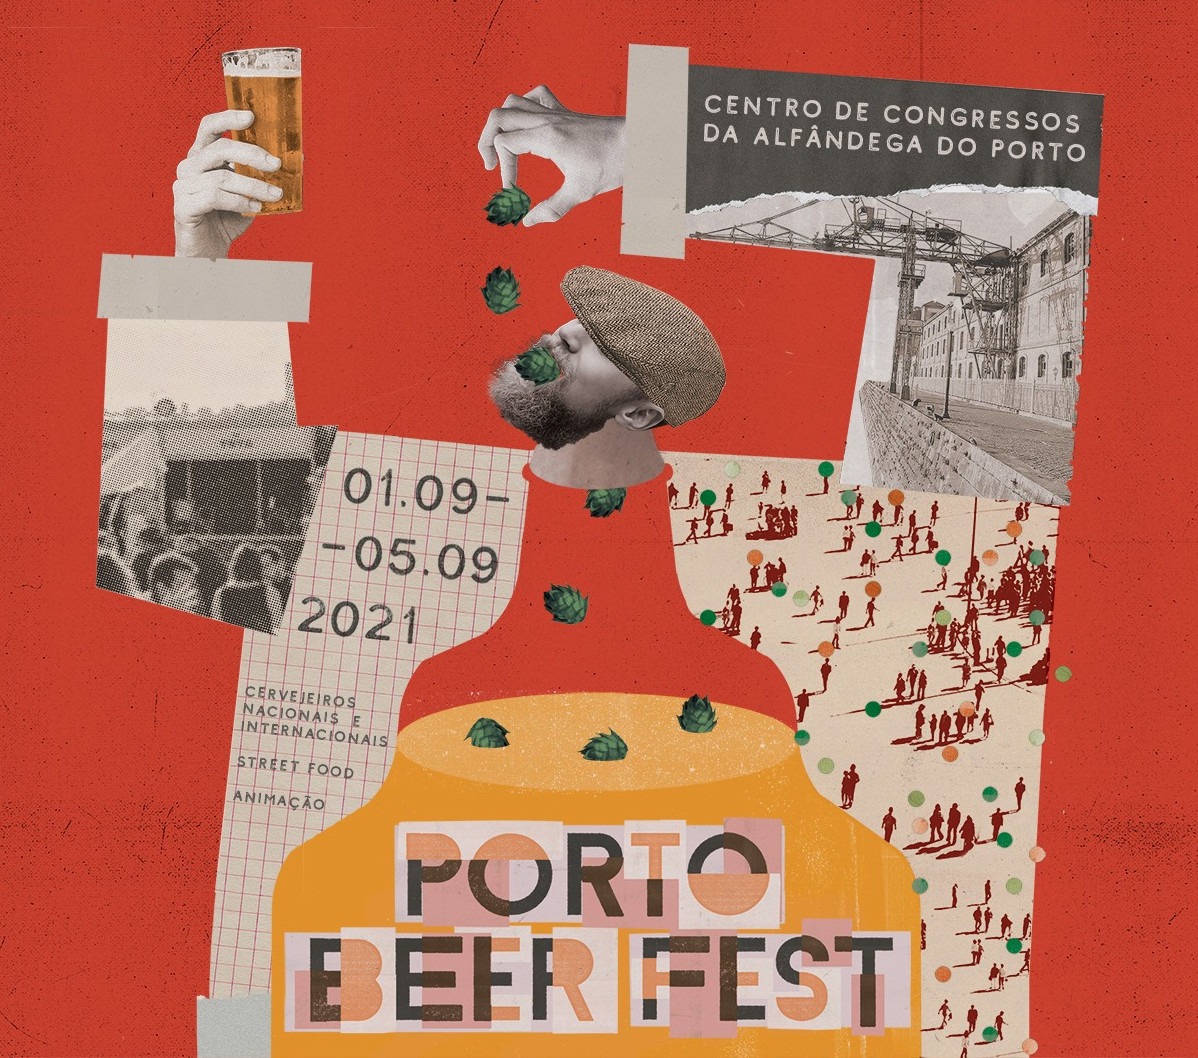 PortoBeerFest 2021 poster